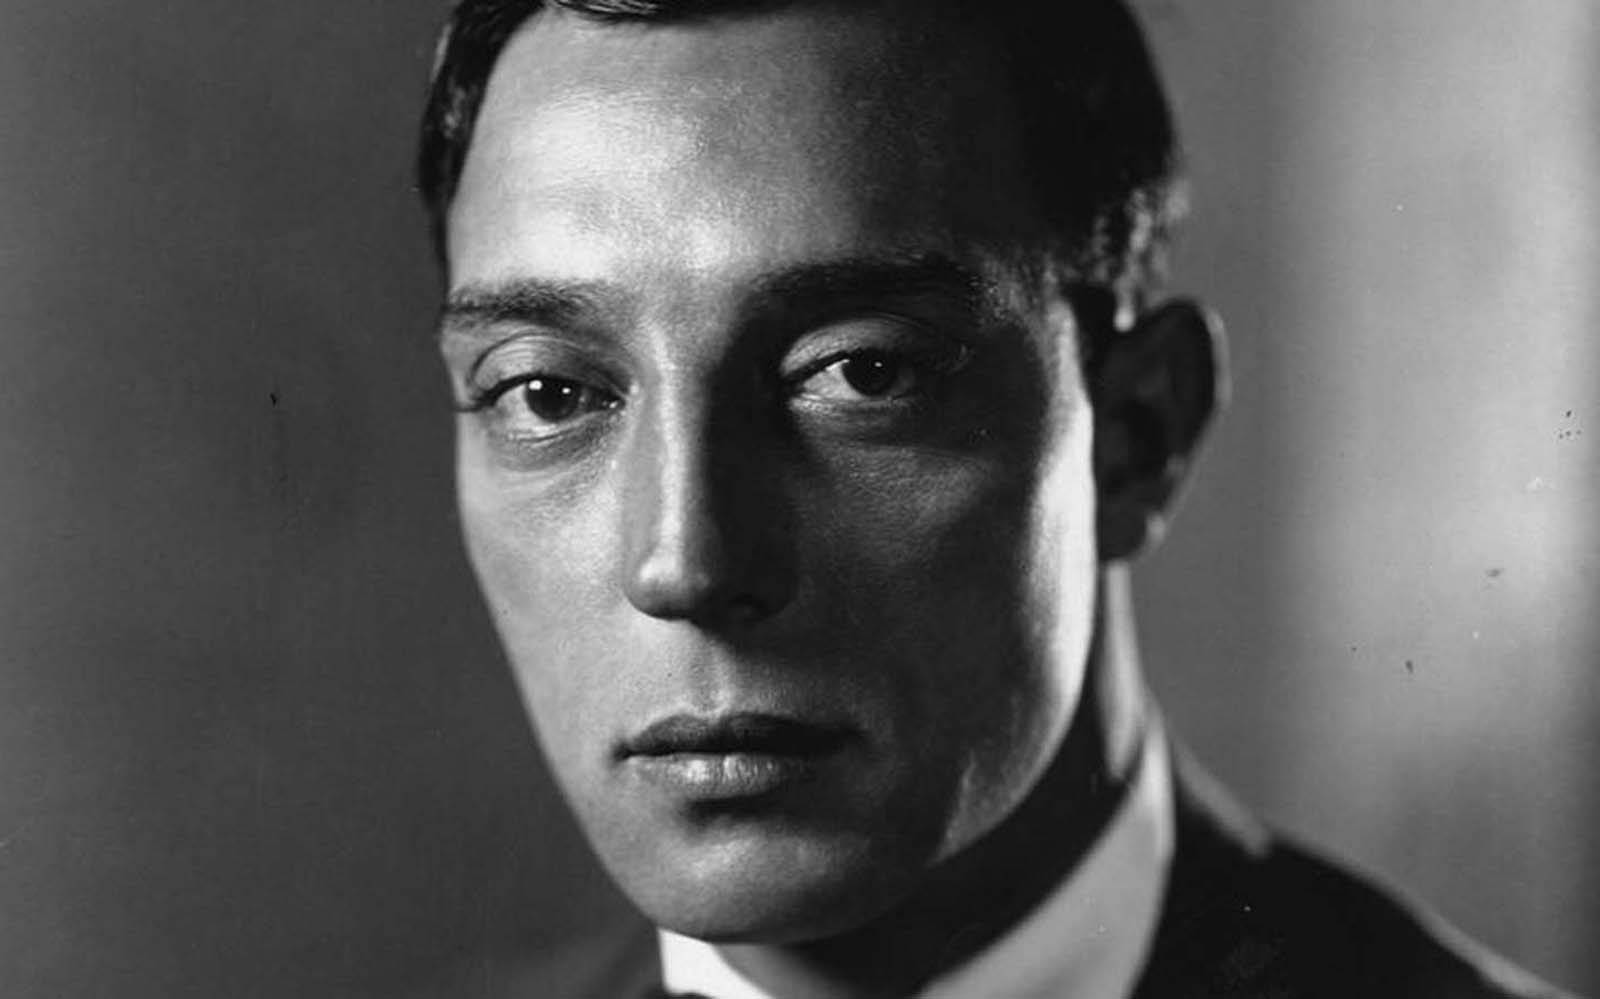 Klassischesportrait Der Buster Keaton Archiv Wallpaper